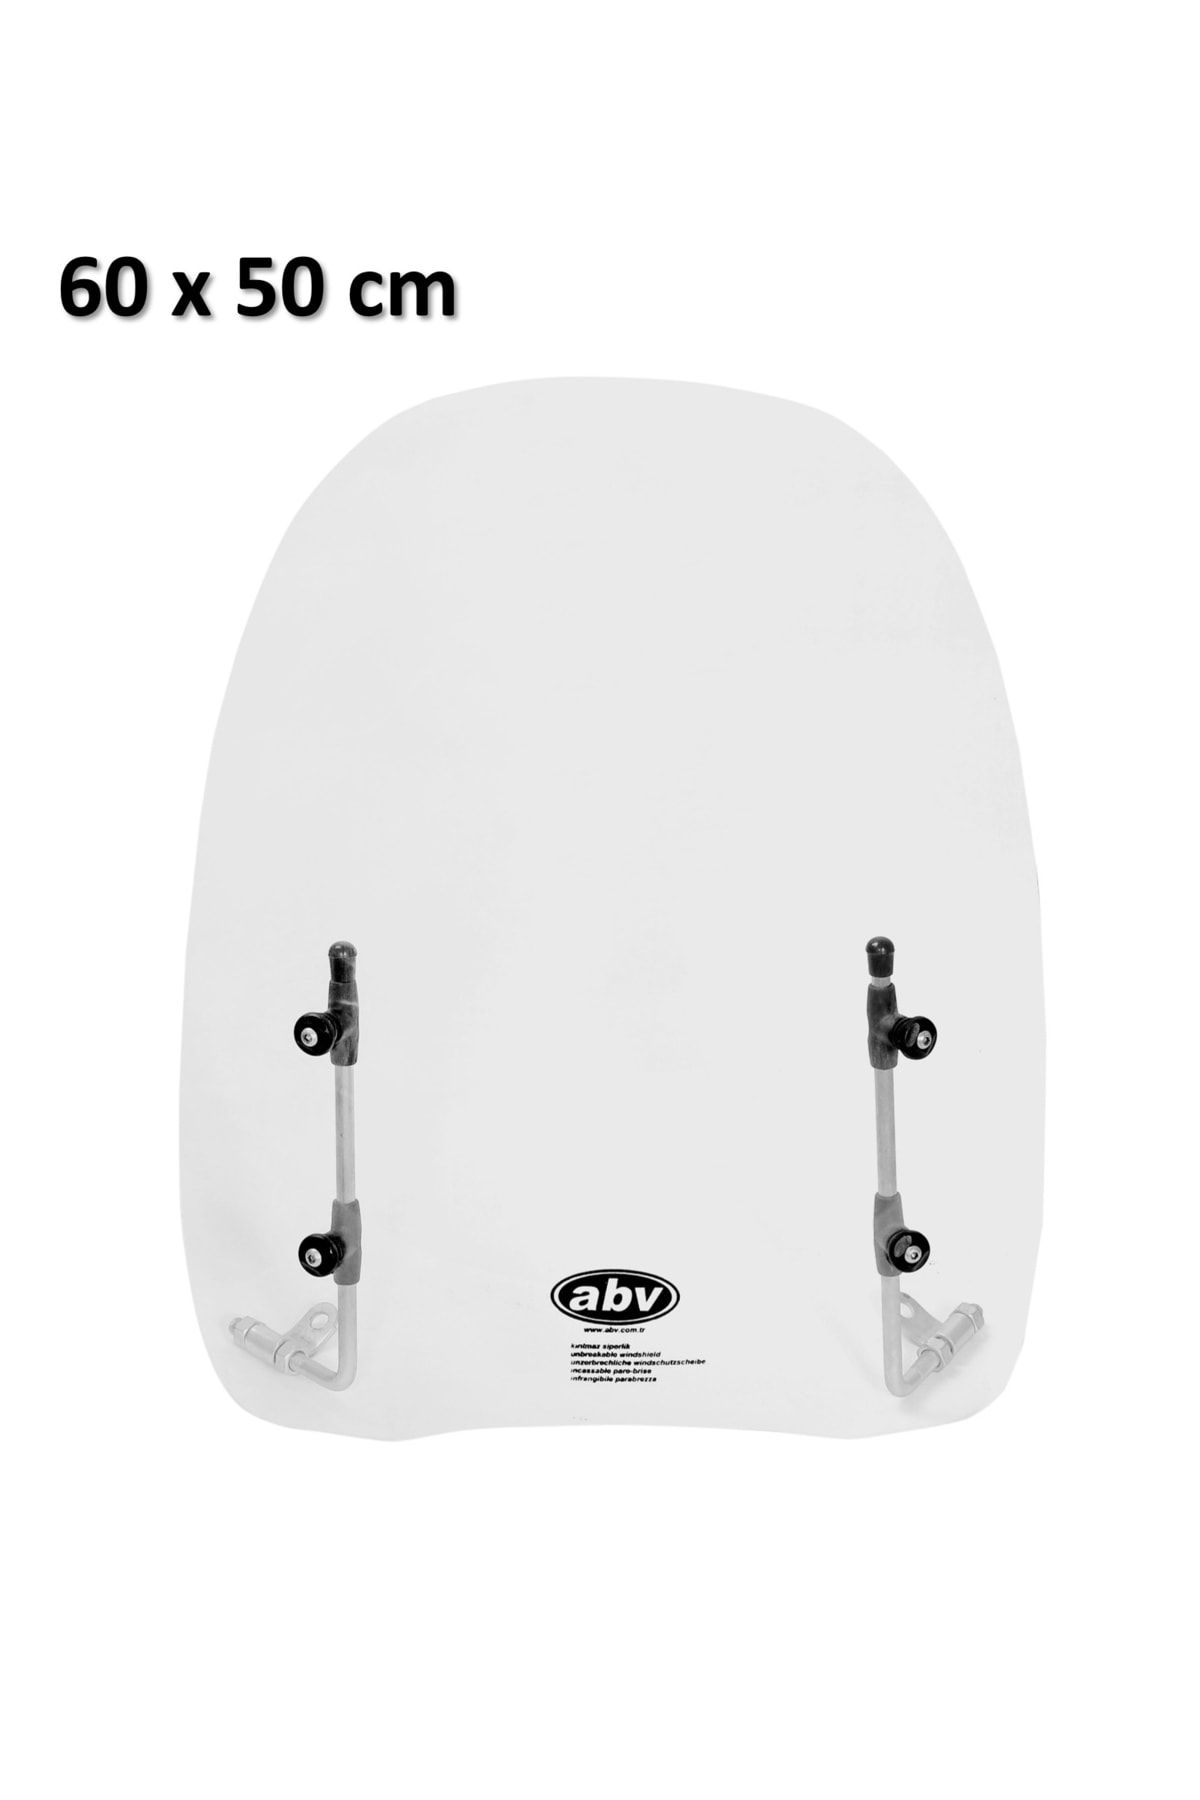 ABV Üniversal Siperlik (60x50 Cm) + Bağlantı Ekipmanı Motosiklet Siperliği Camı Ön Camı